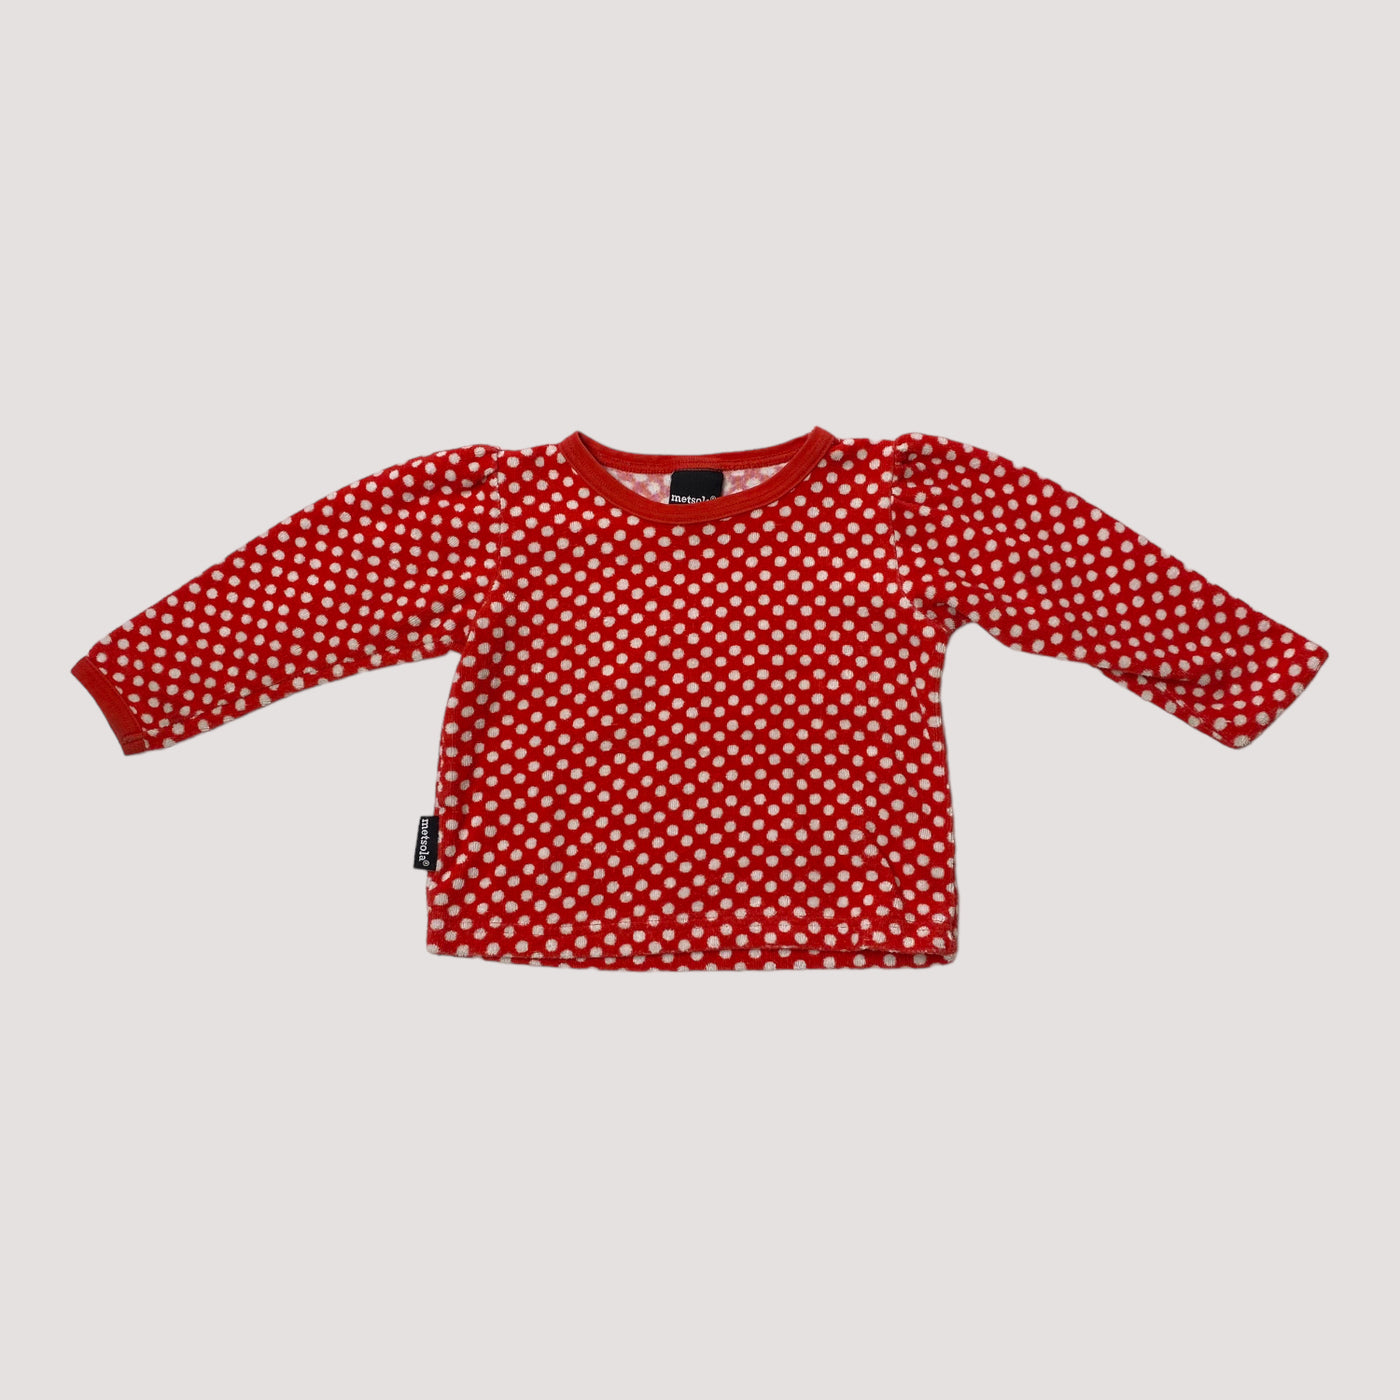 terry shirt, polka dots | 80cm